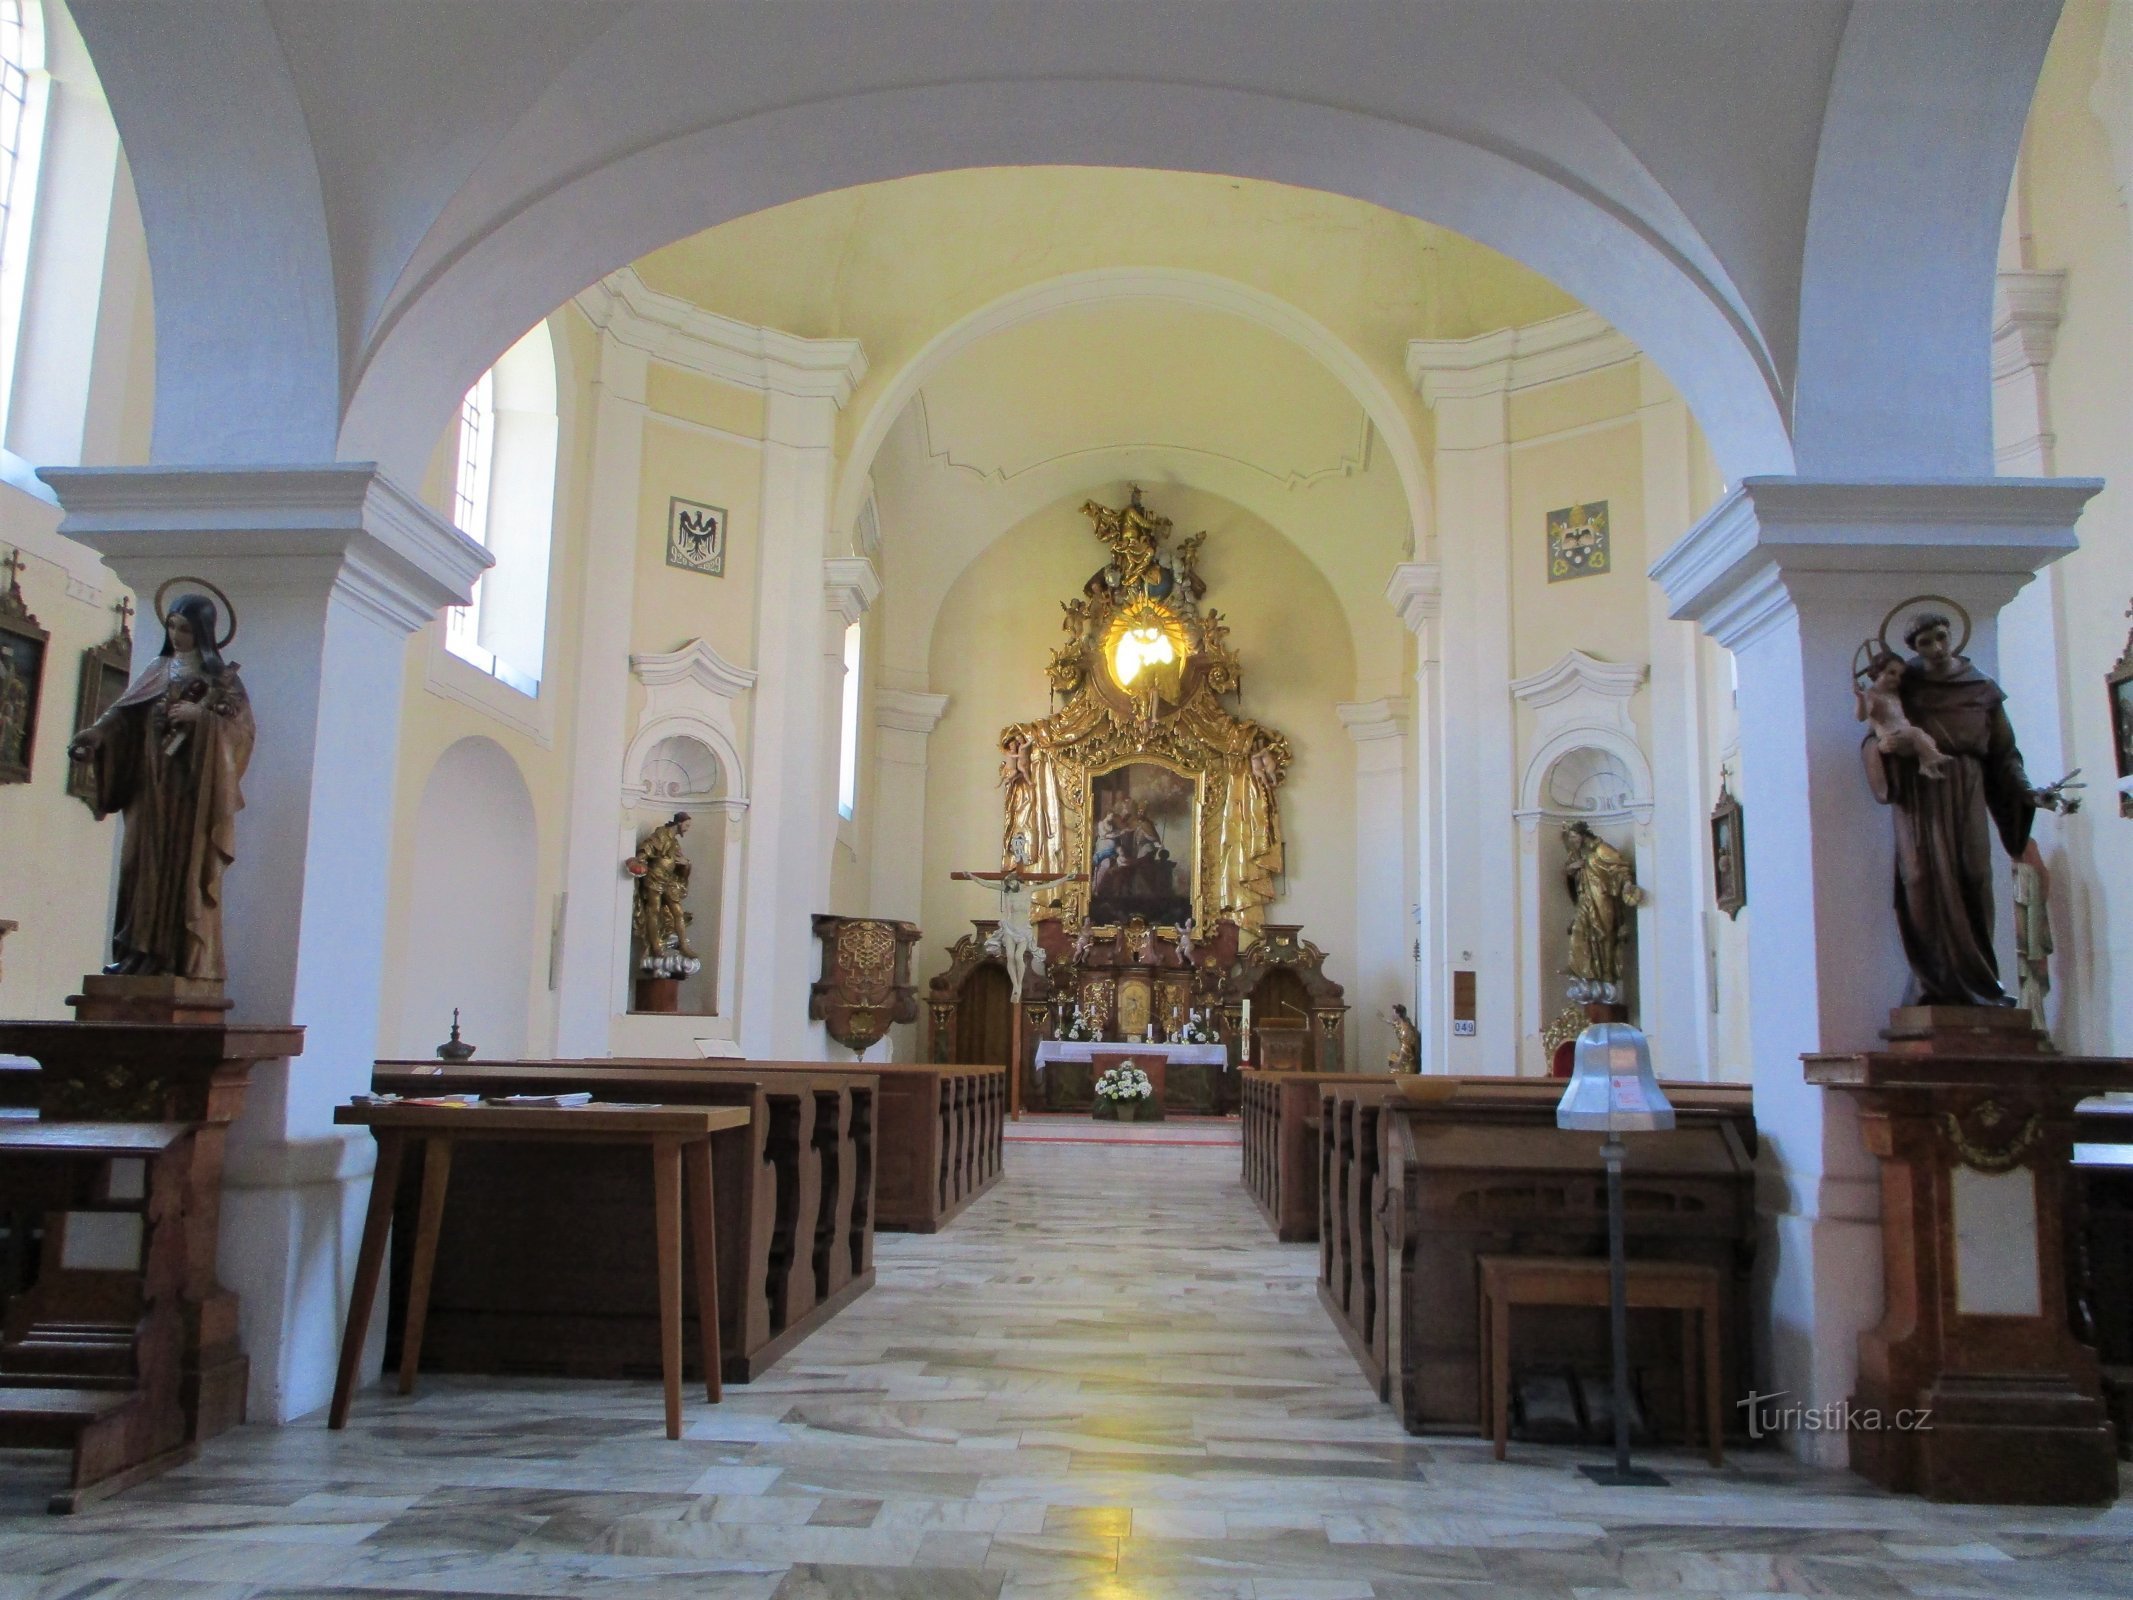 Interiorul bisericii Sf. Martina (Holice, 16.5.2020)